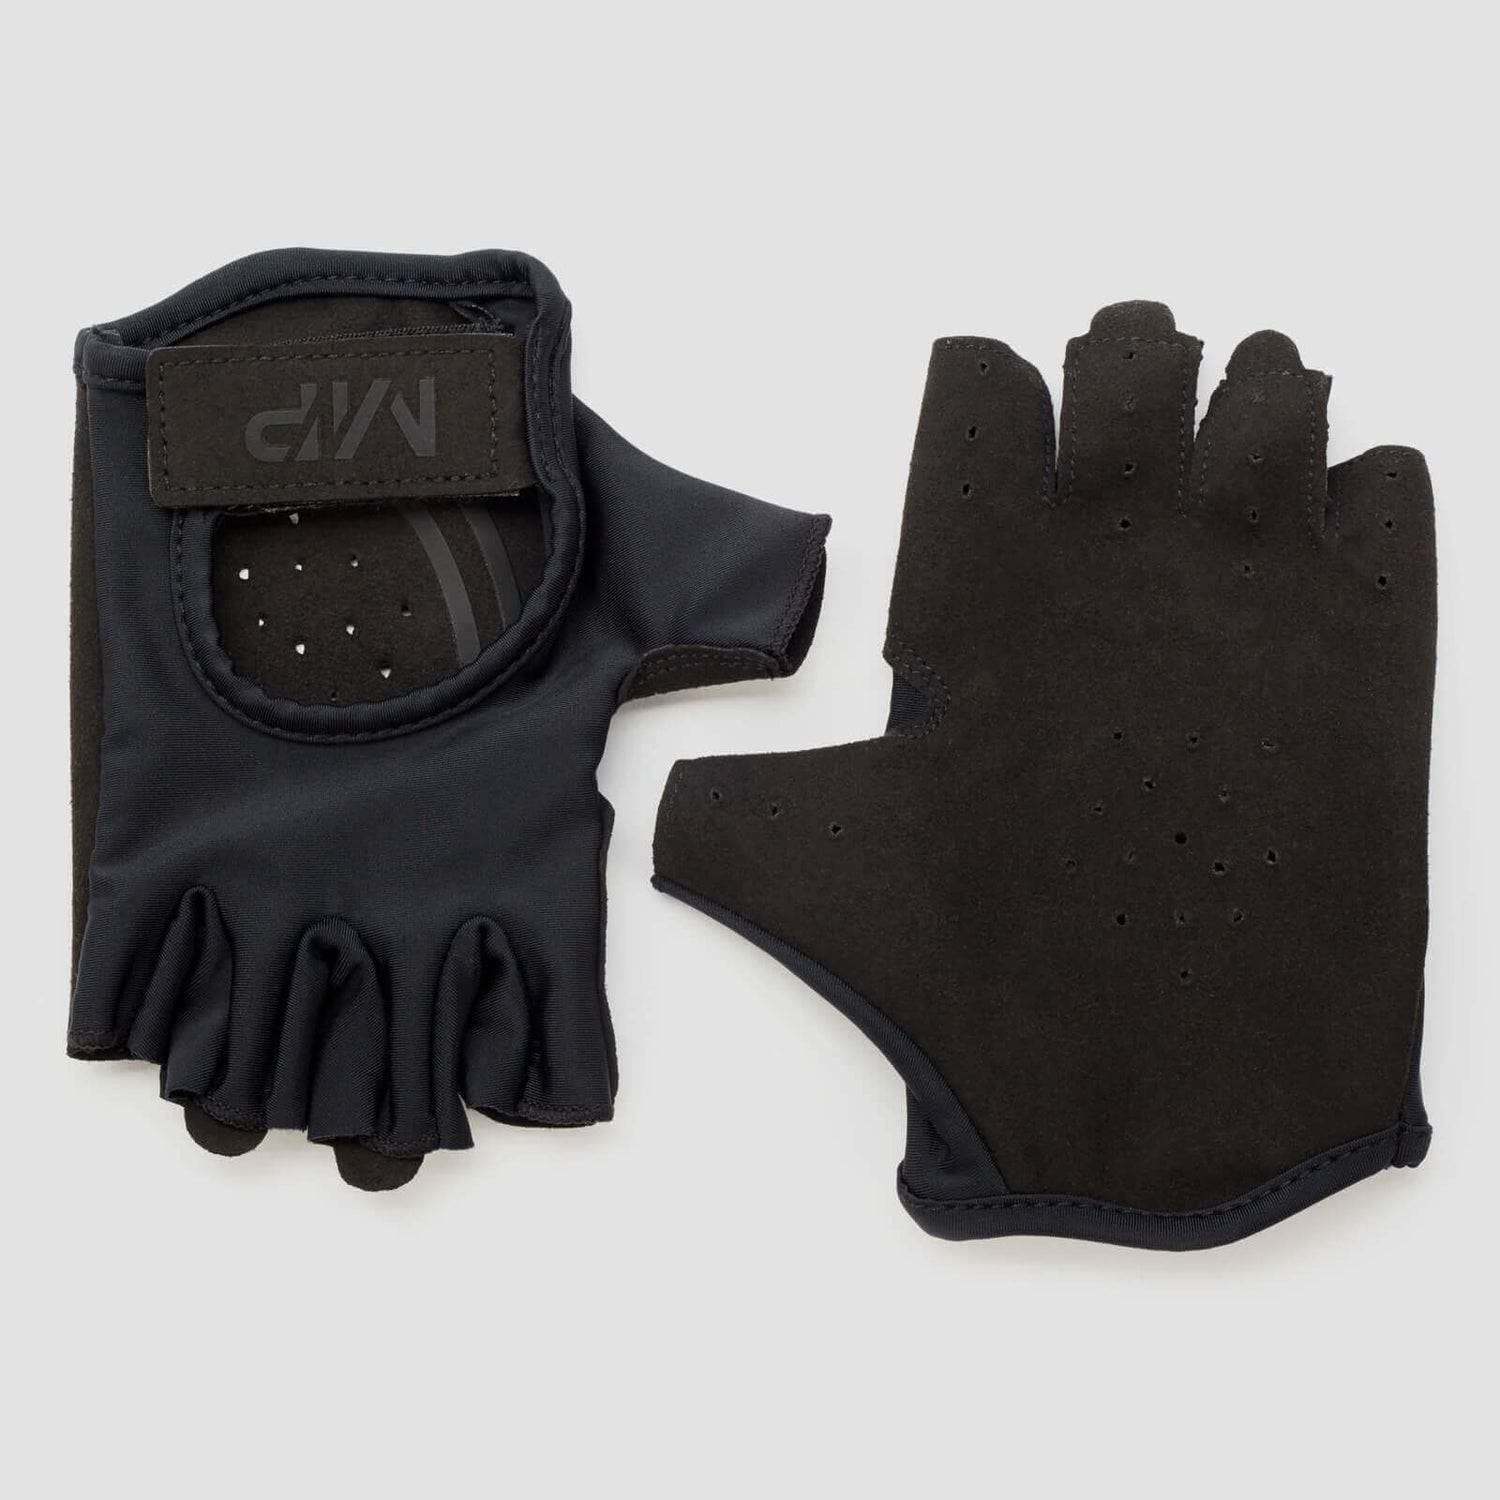 Mănuși pentru ridicat greutăți MP pentru bărbați - Negru - L